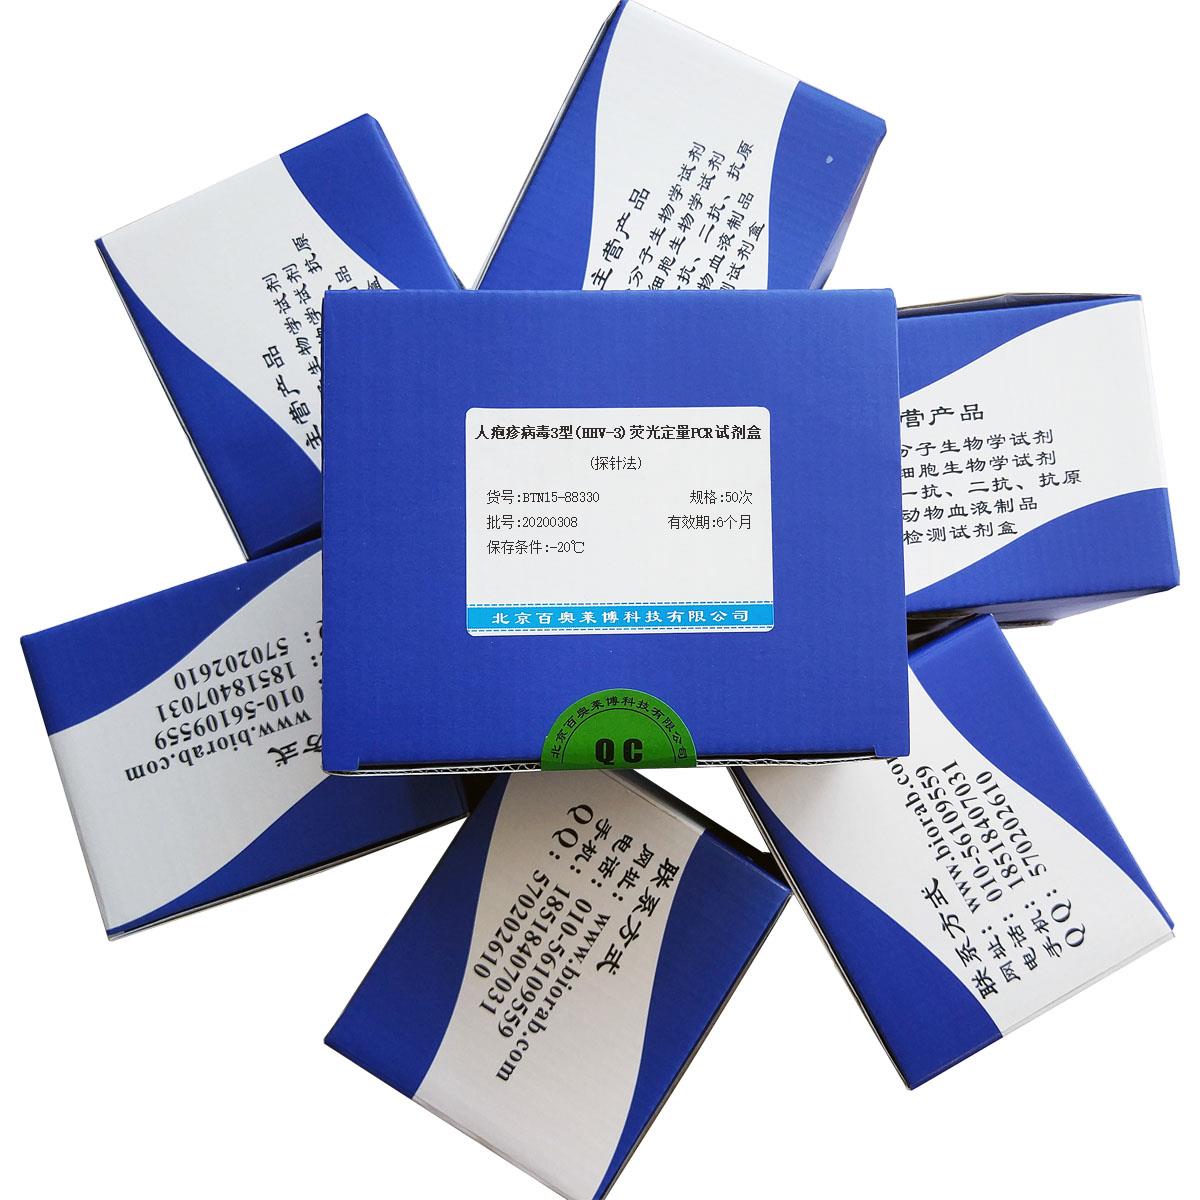 人疱疹病毒3型(HHV-3)荧光定量PCR试剂盒(探针法)